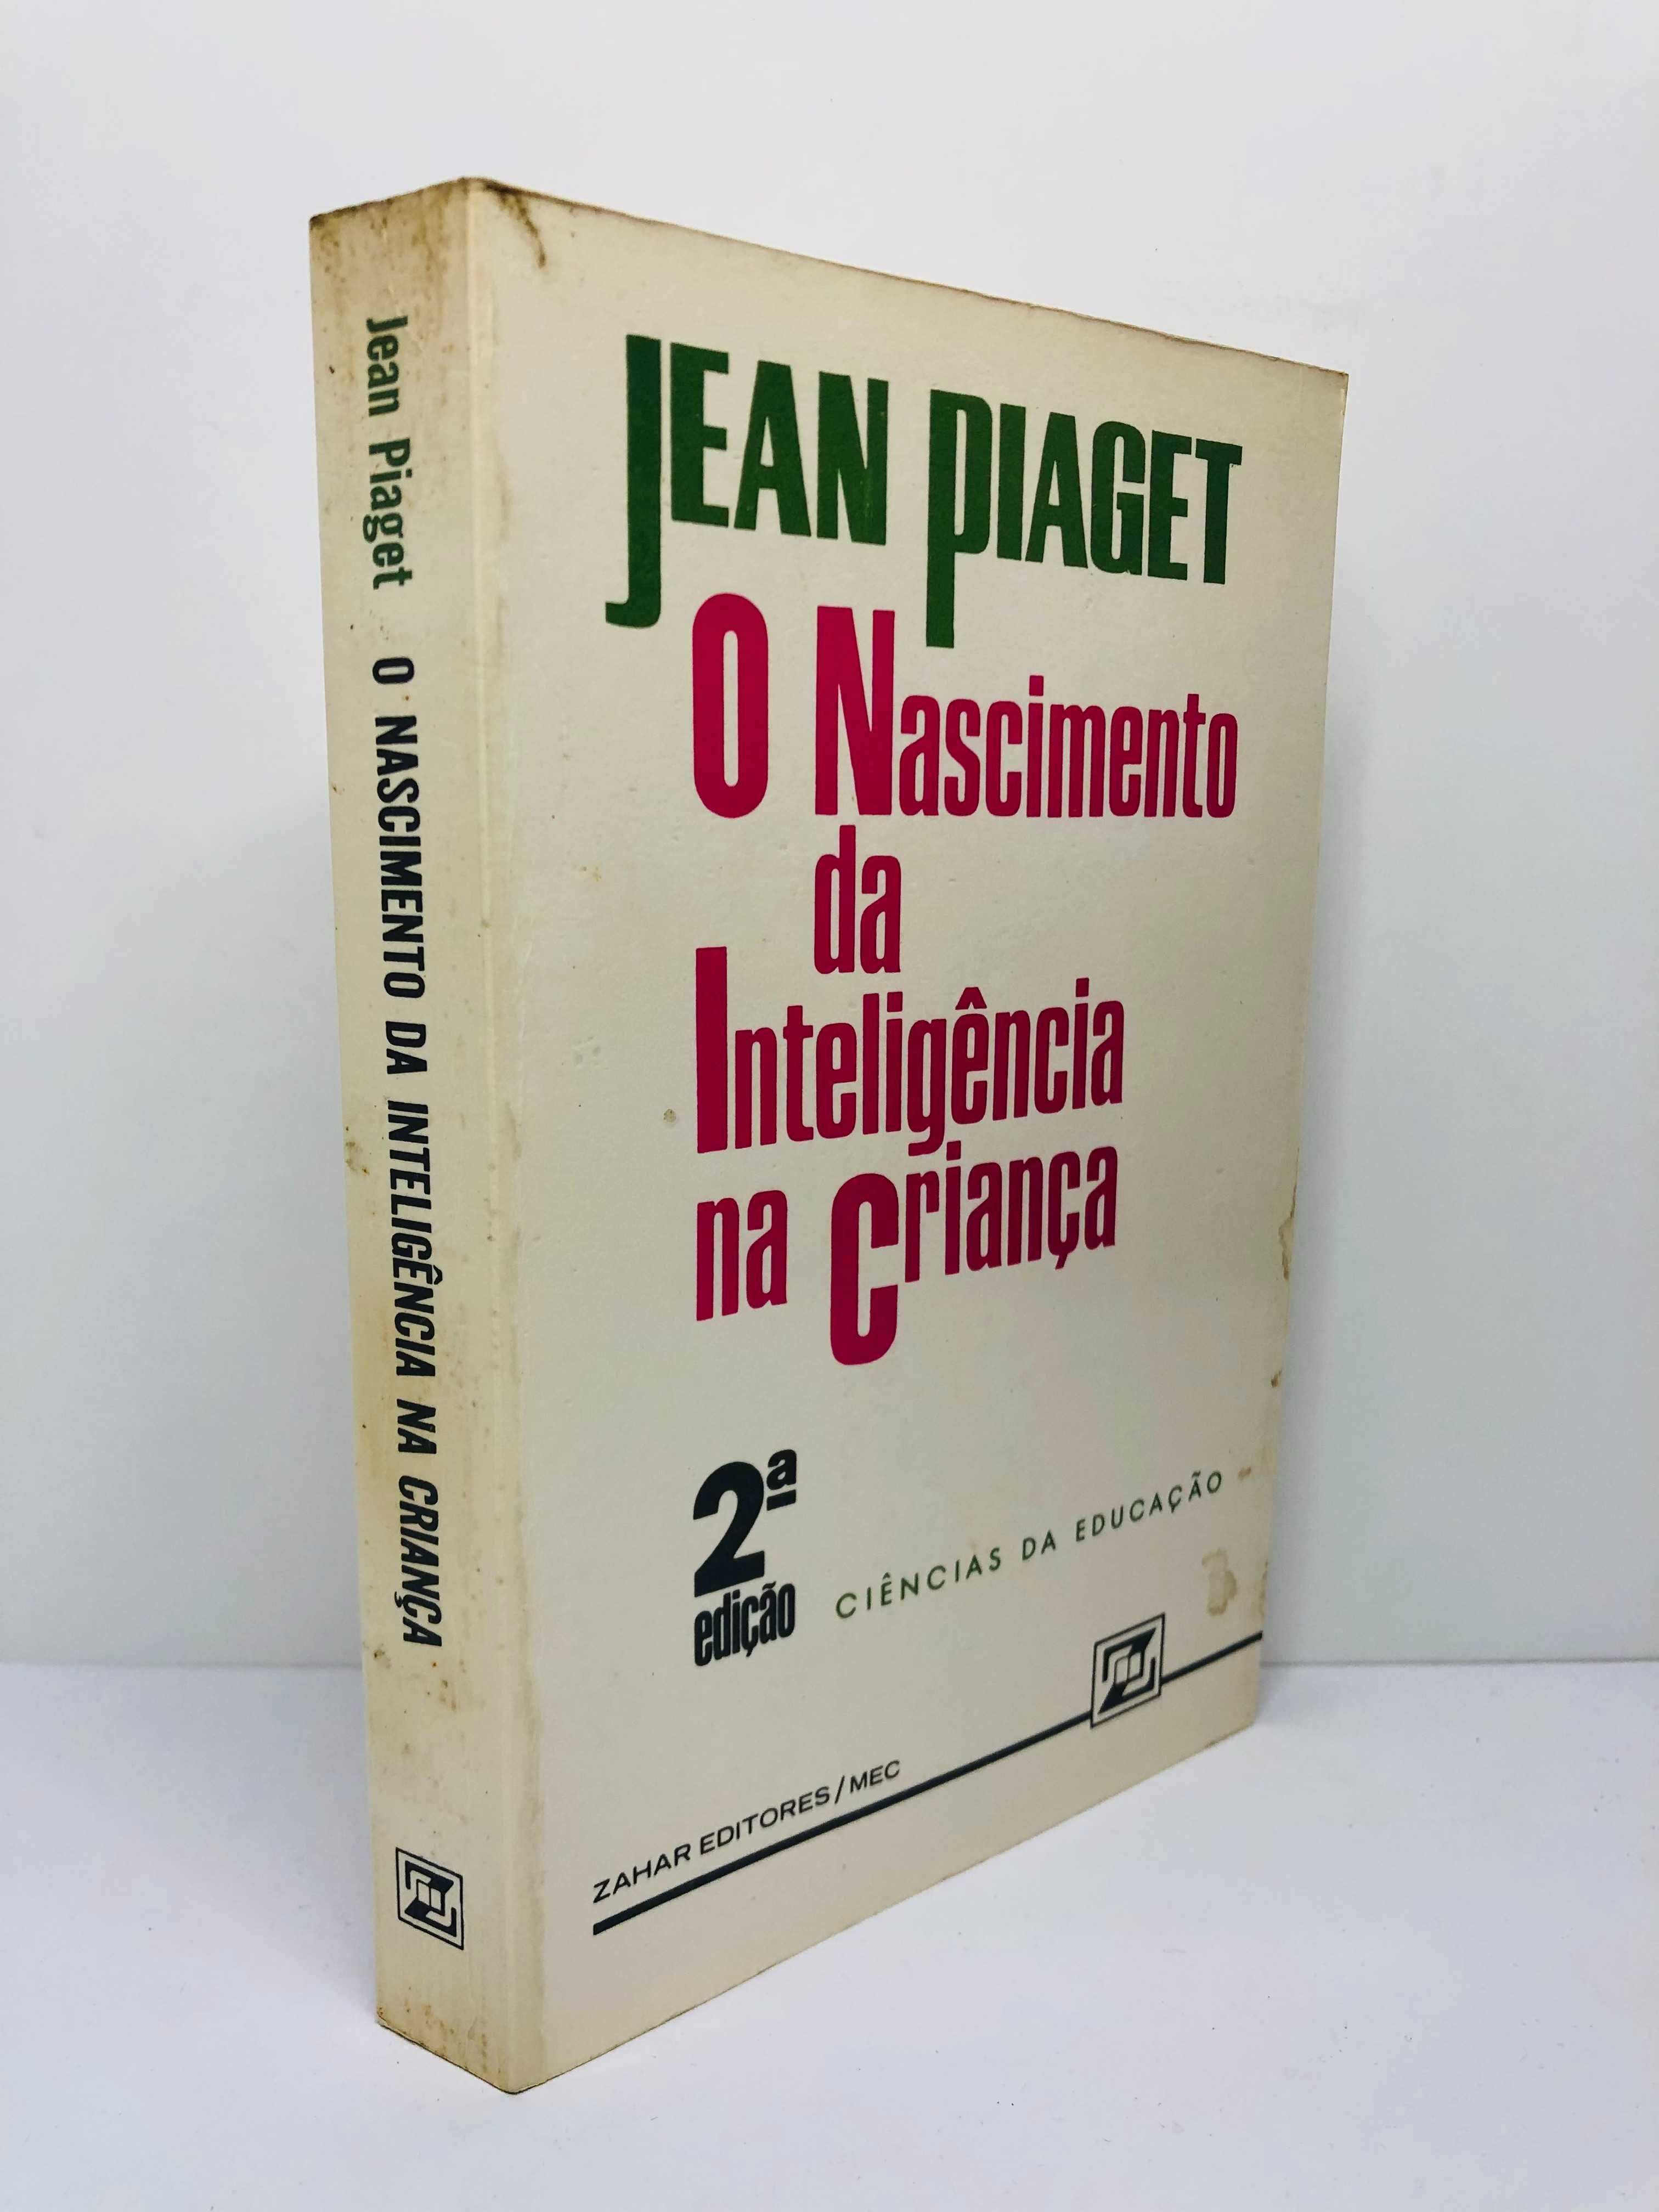 O Nascimnento da Inteligência na Criança - Jean Piaget